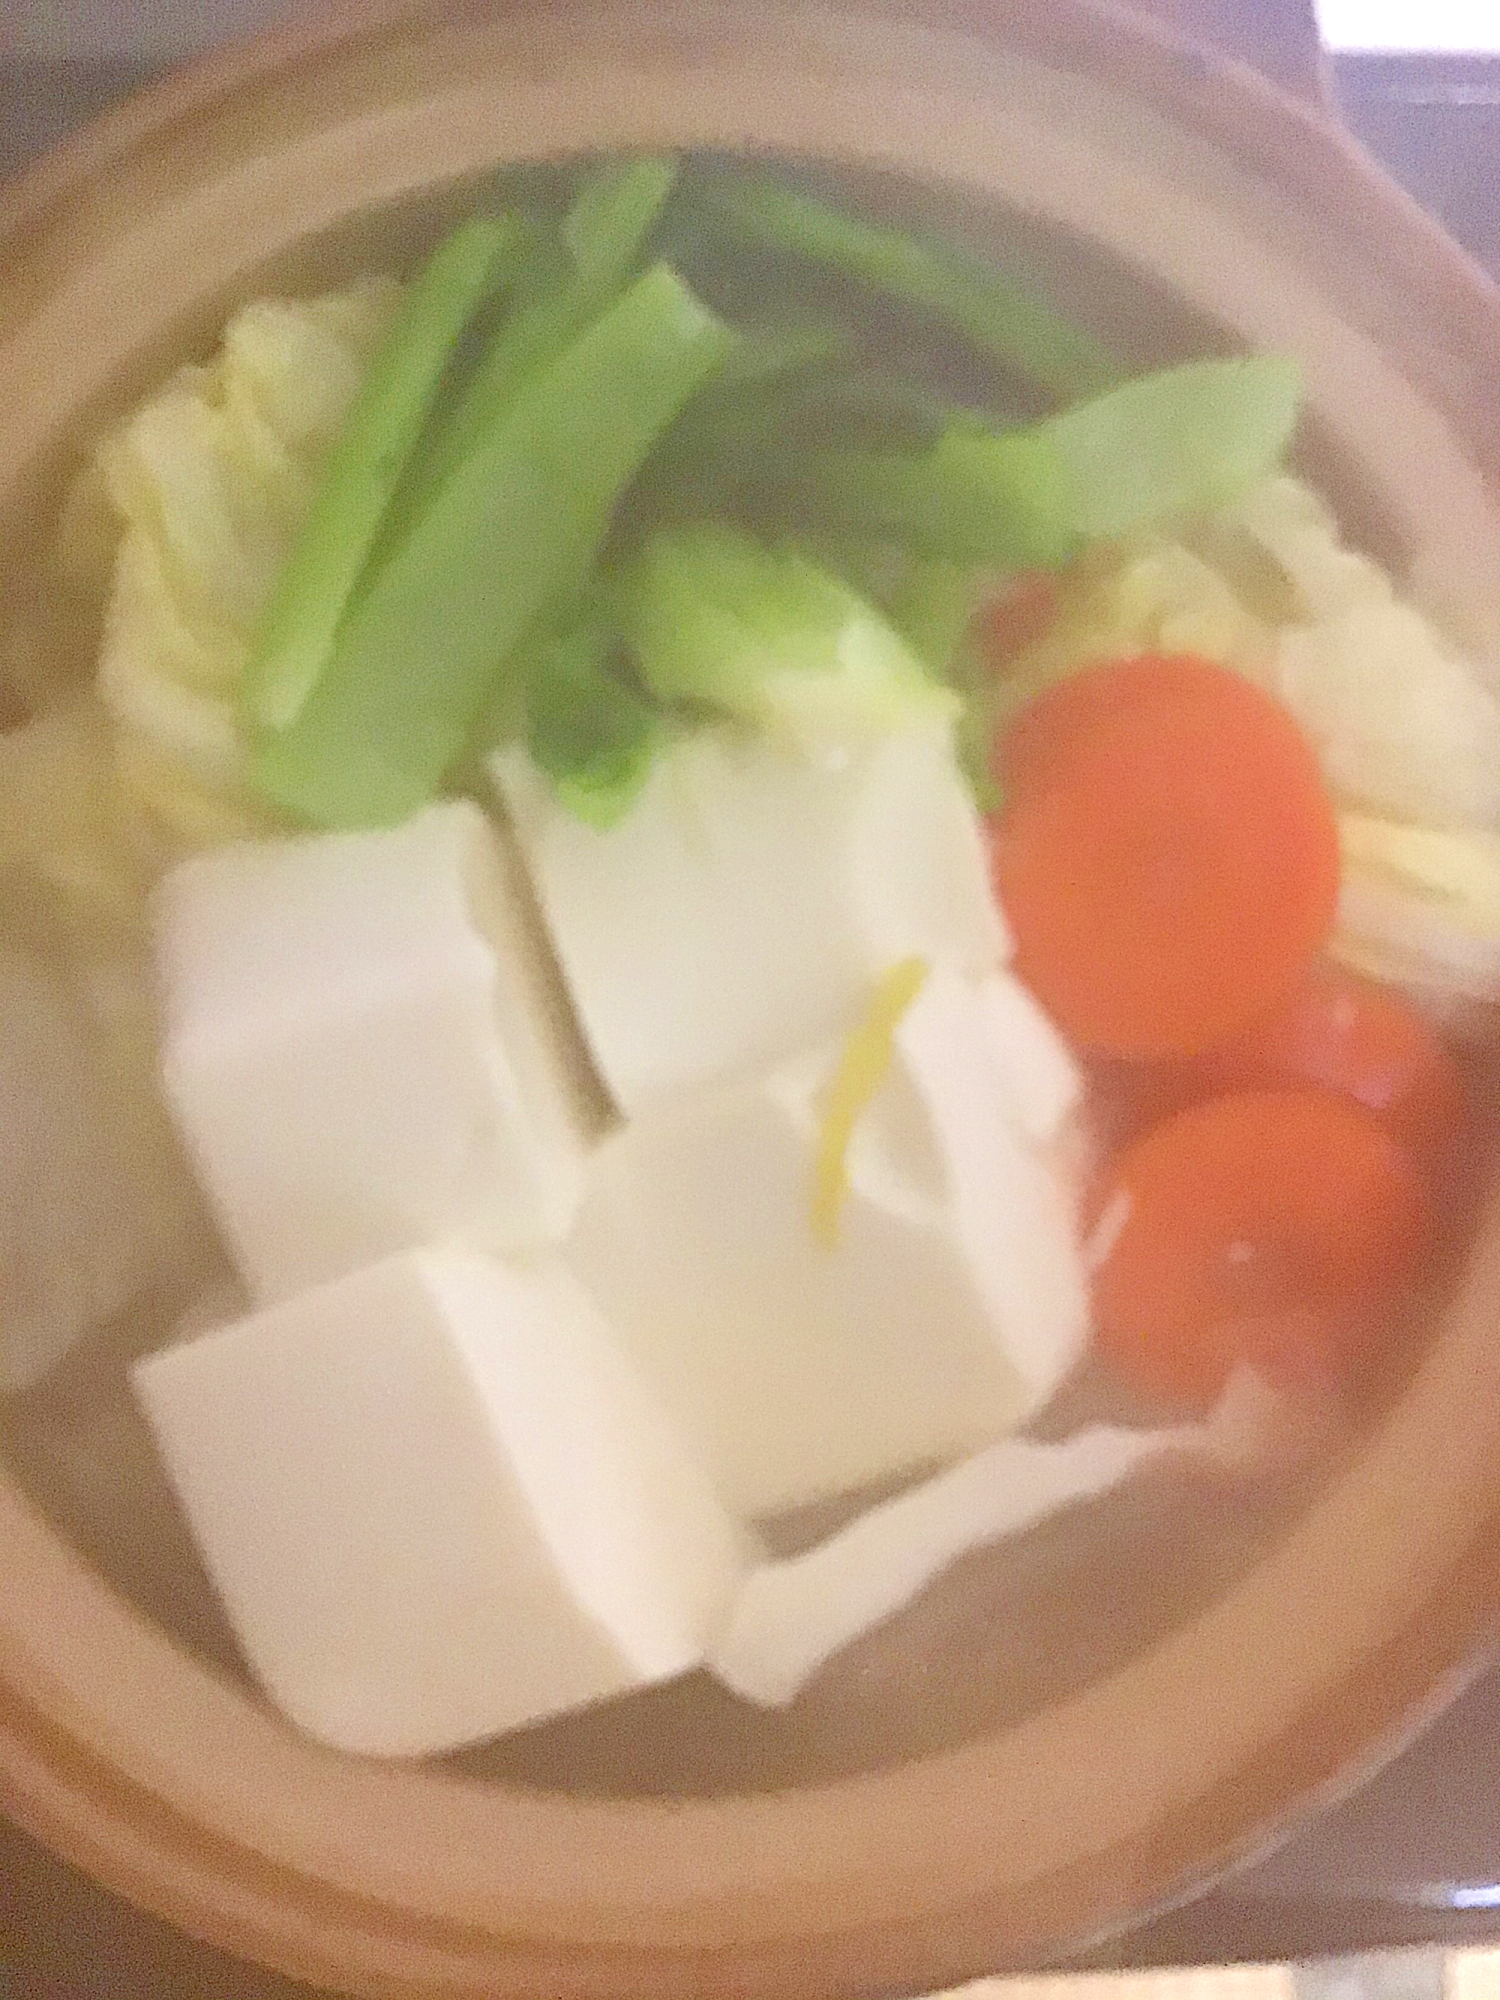 雪菜入り湯豆腐。